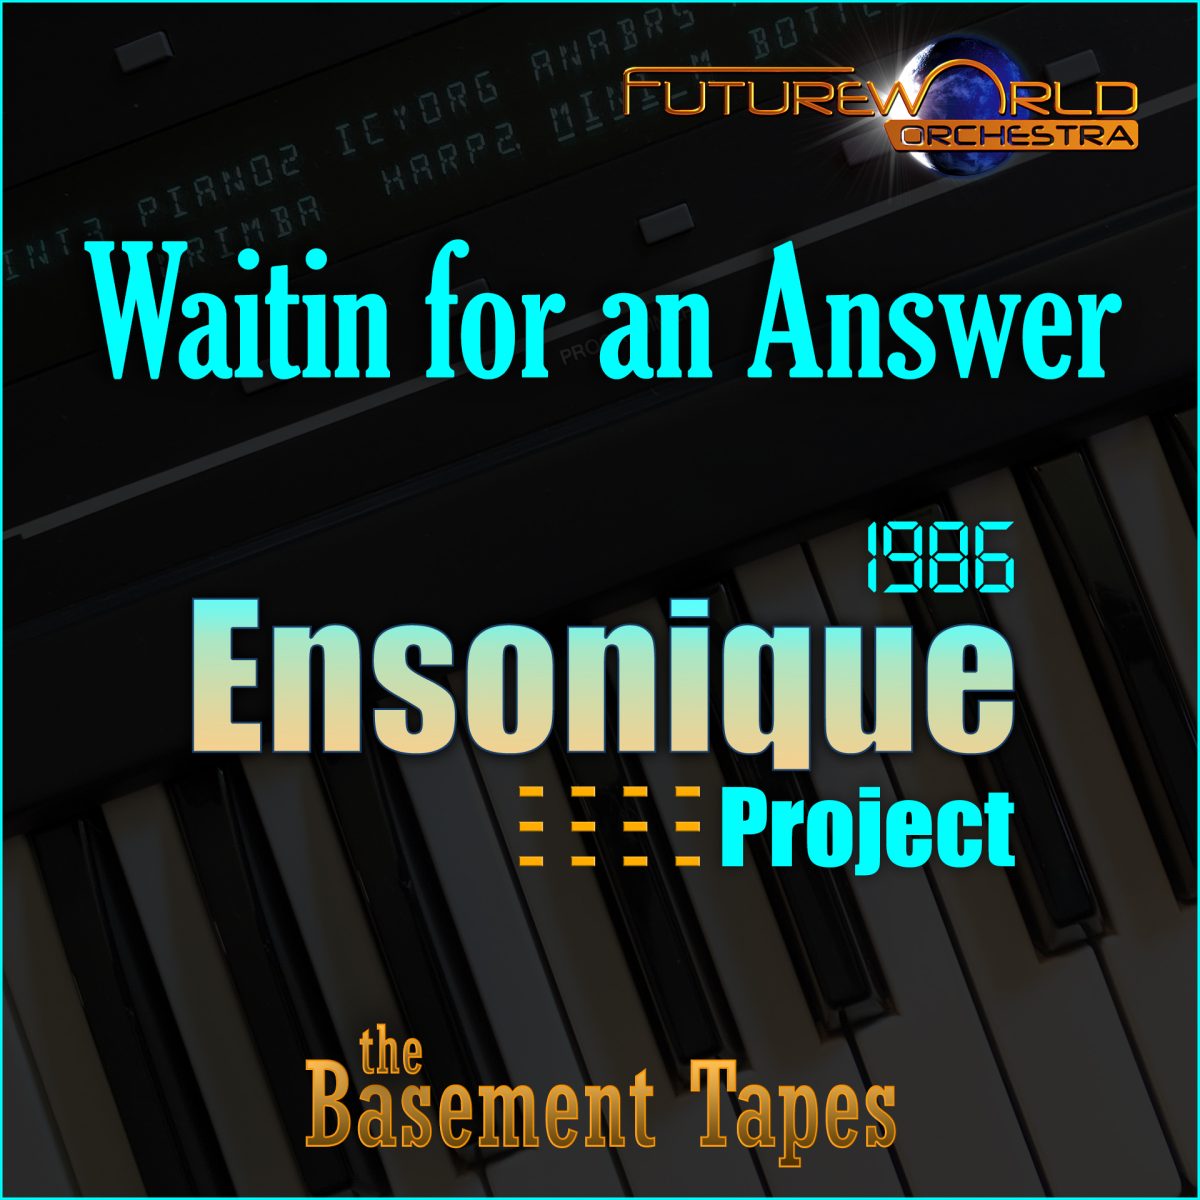 Ensonique - Playlist Image -